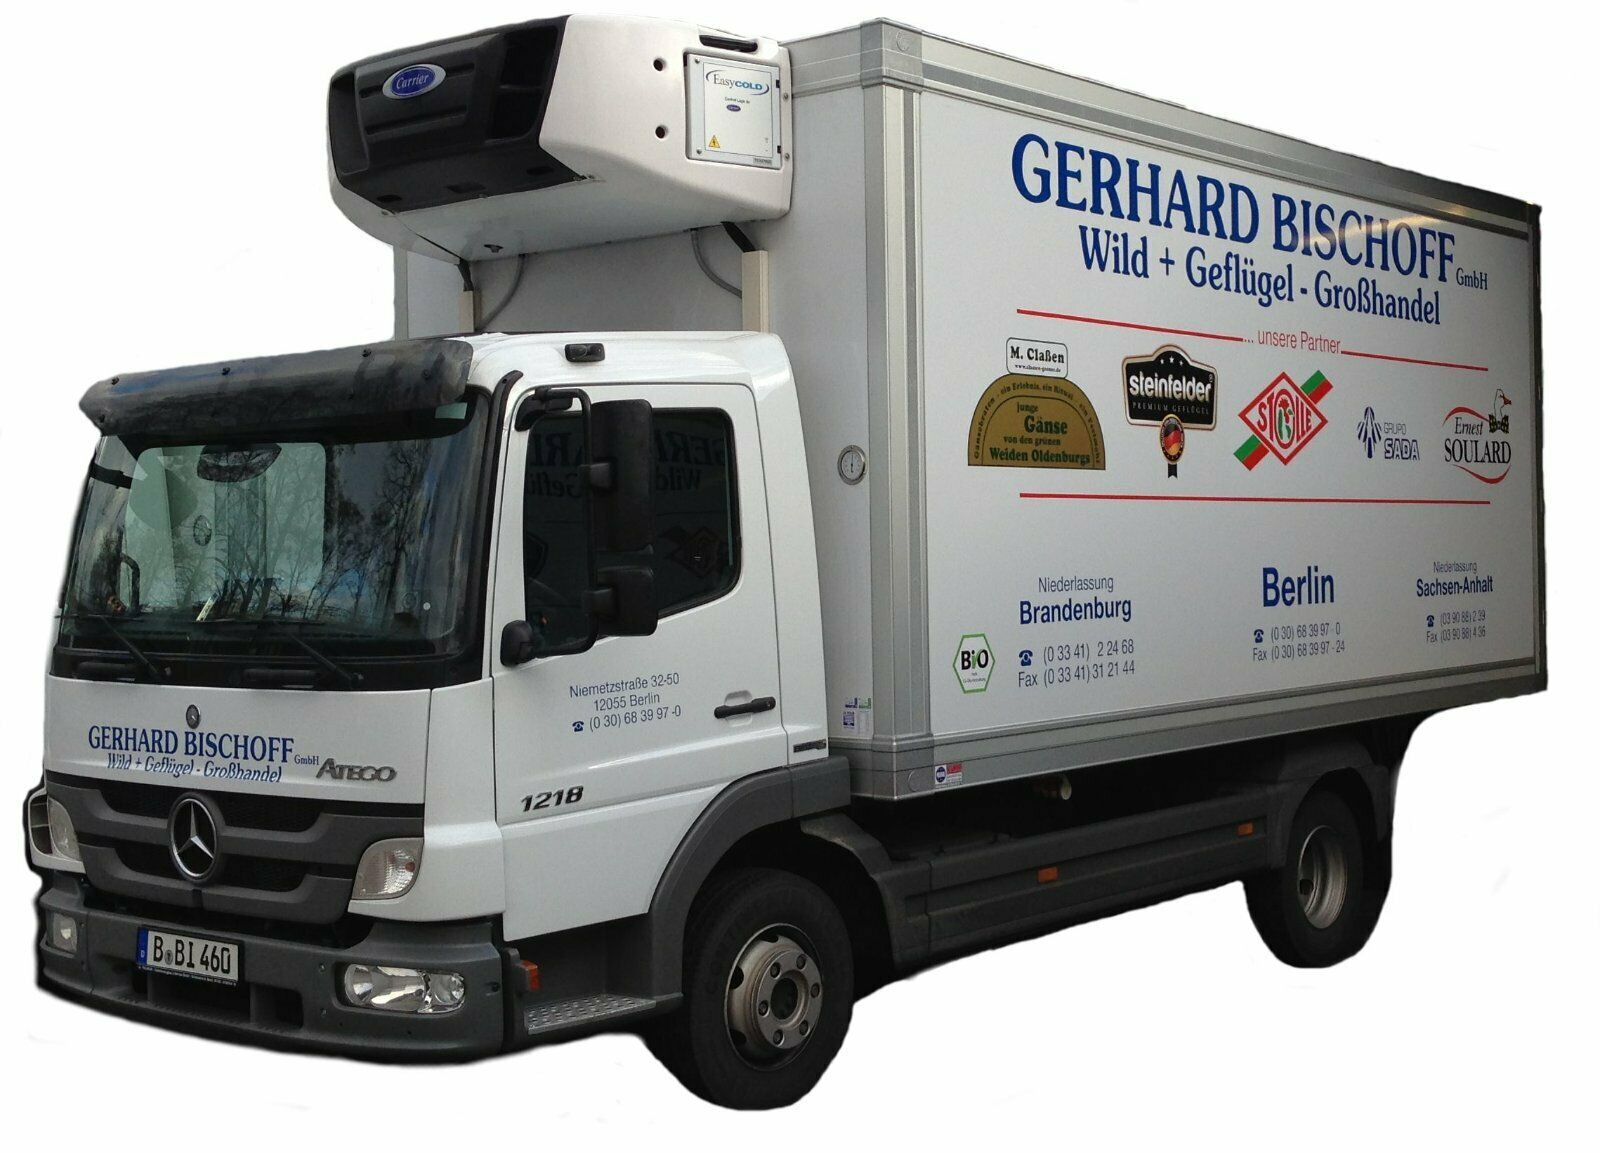 Gerhard Bischoff GmbH